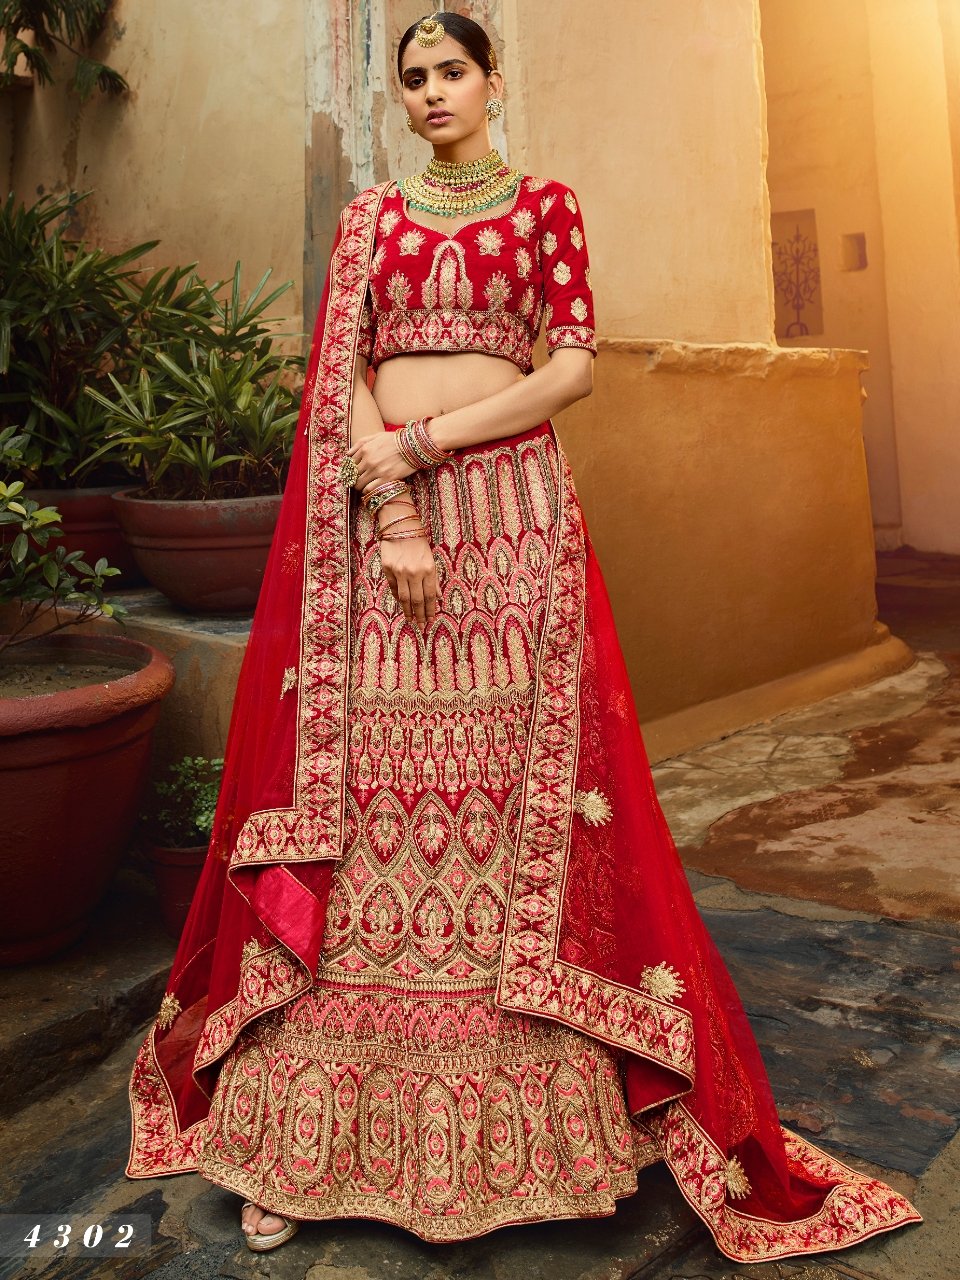 BridalTrunk - Online Indian Multi Designer Fashion Shopping RED VELVET  LEHENGA